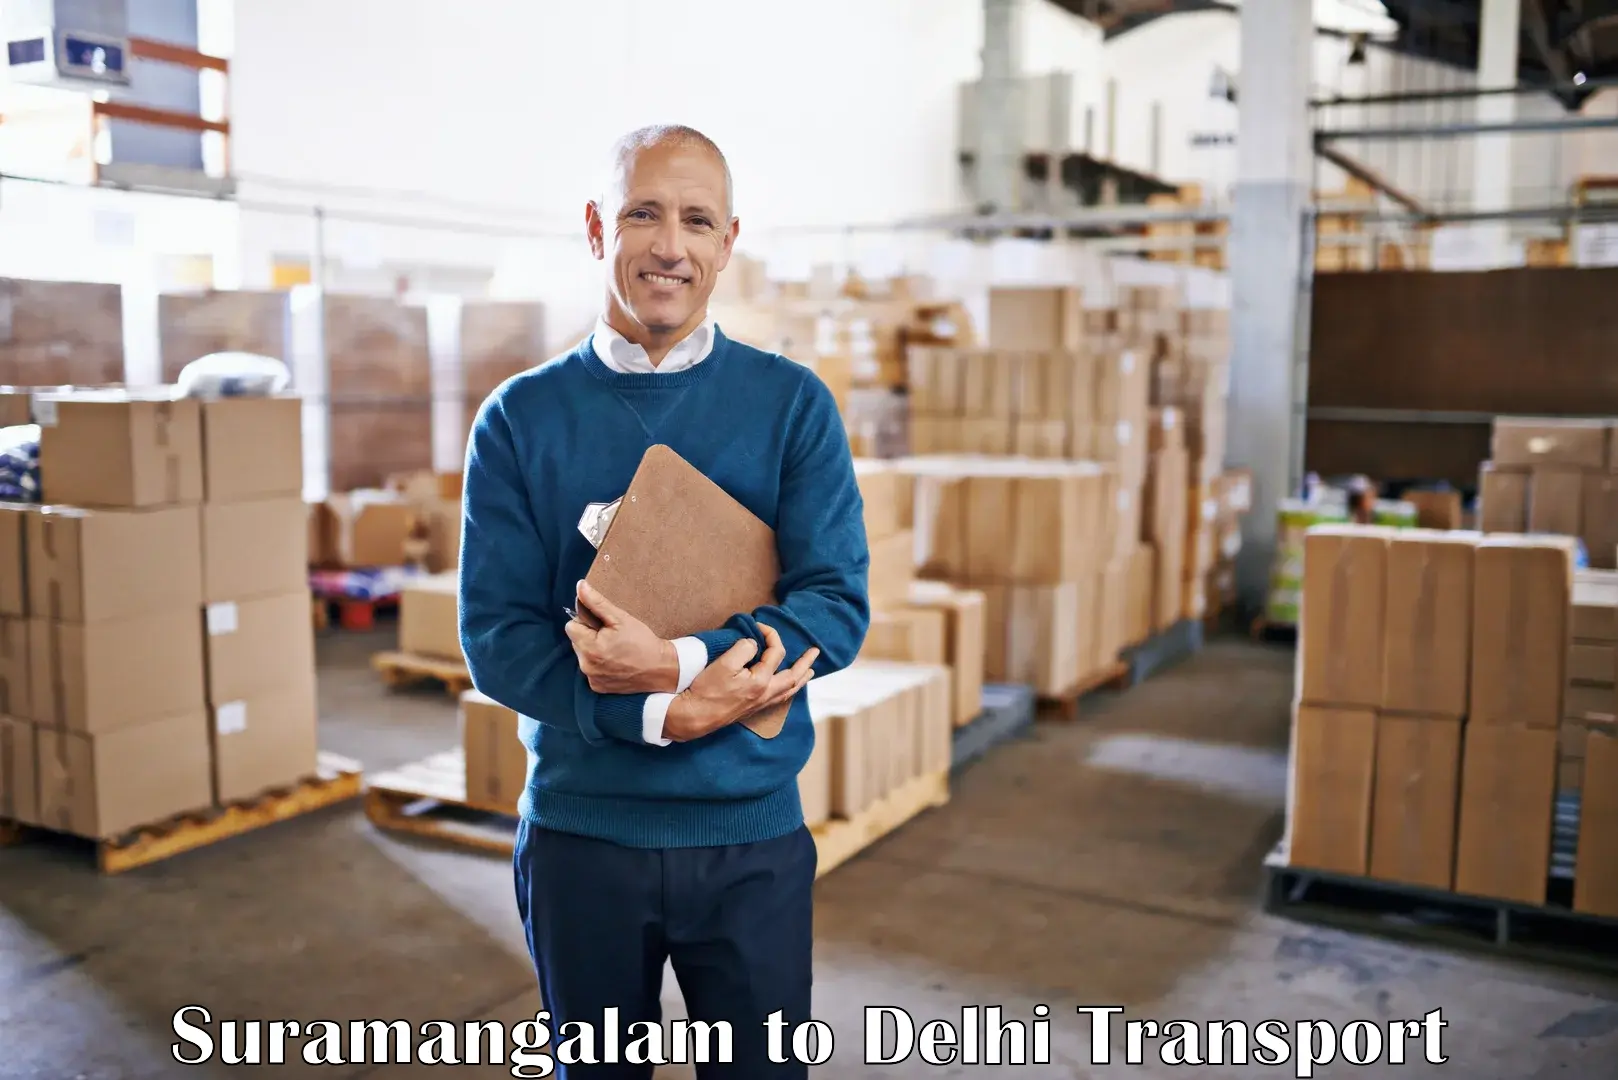 Shipping services Suramangalam to NIT Delhi